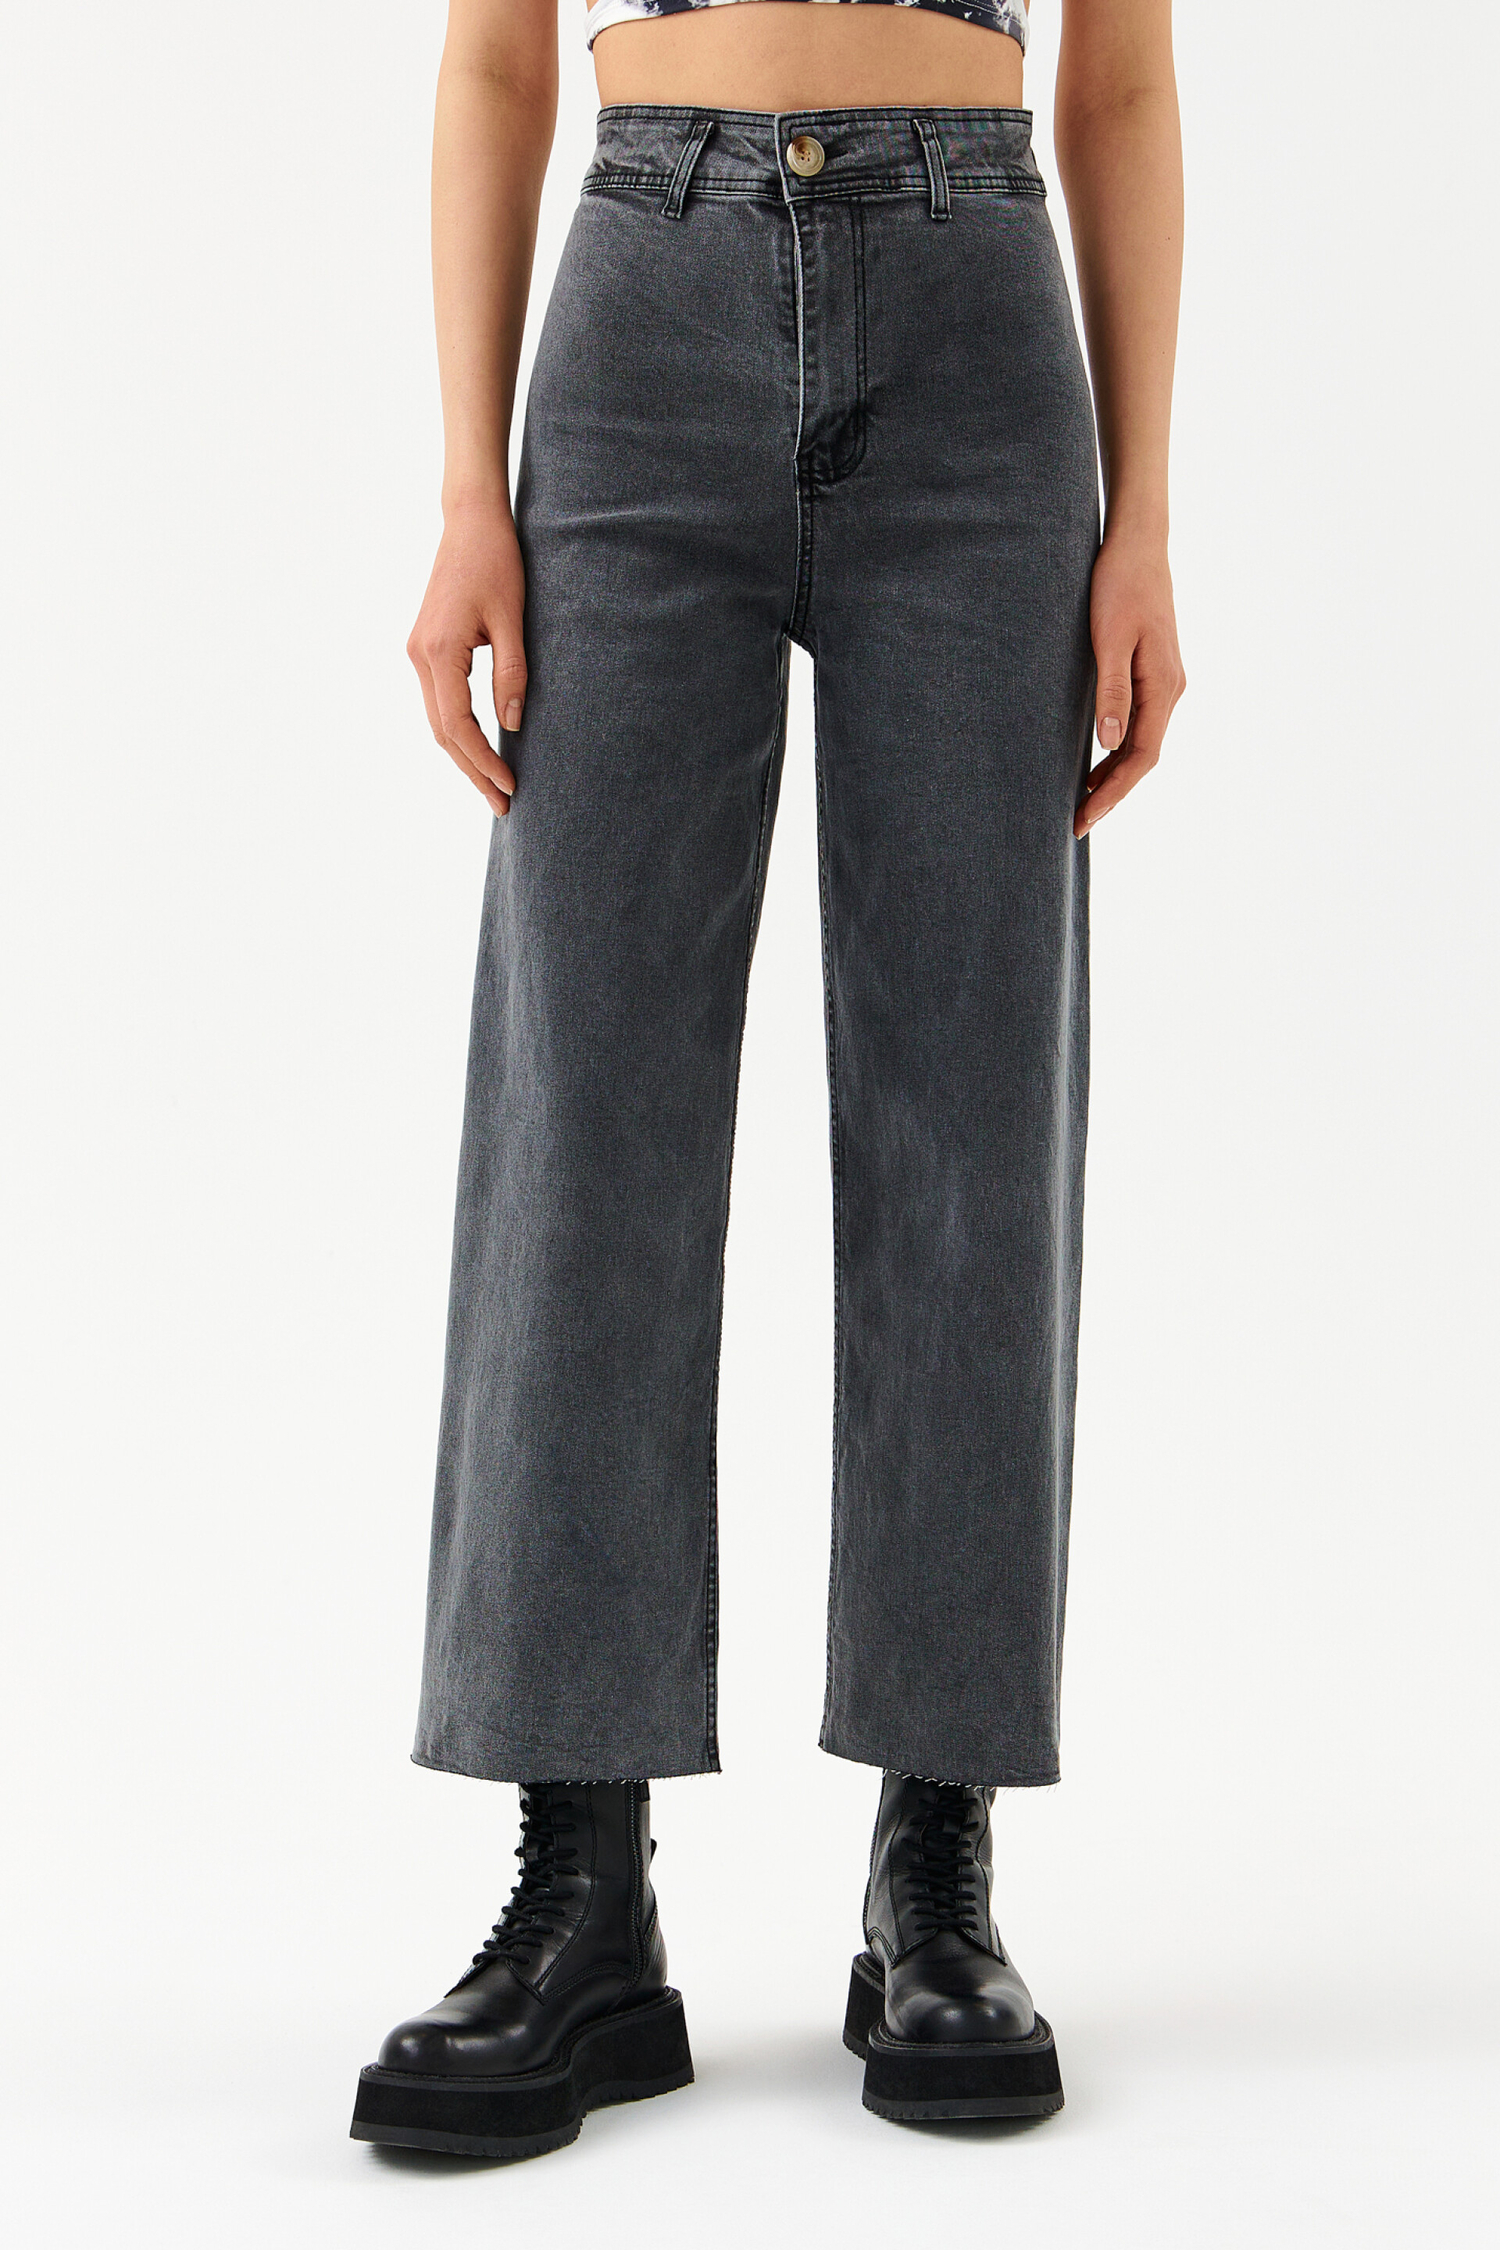 Брюки джинсовые женские befree светло-серый (размер: XL) (2221124734)купить - SKU10713127